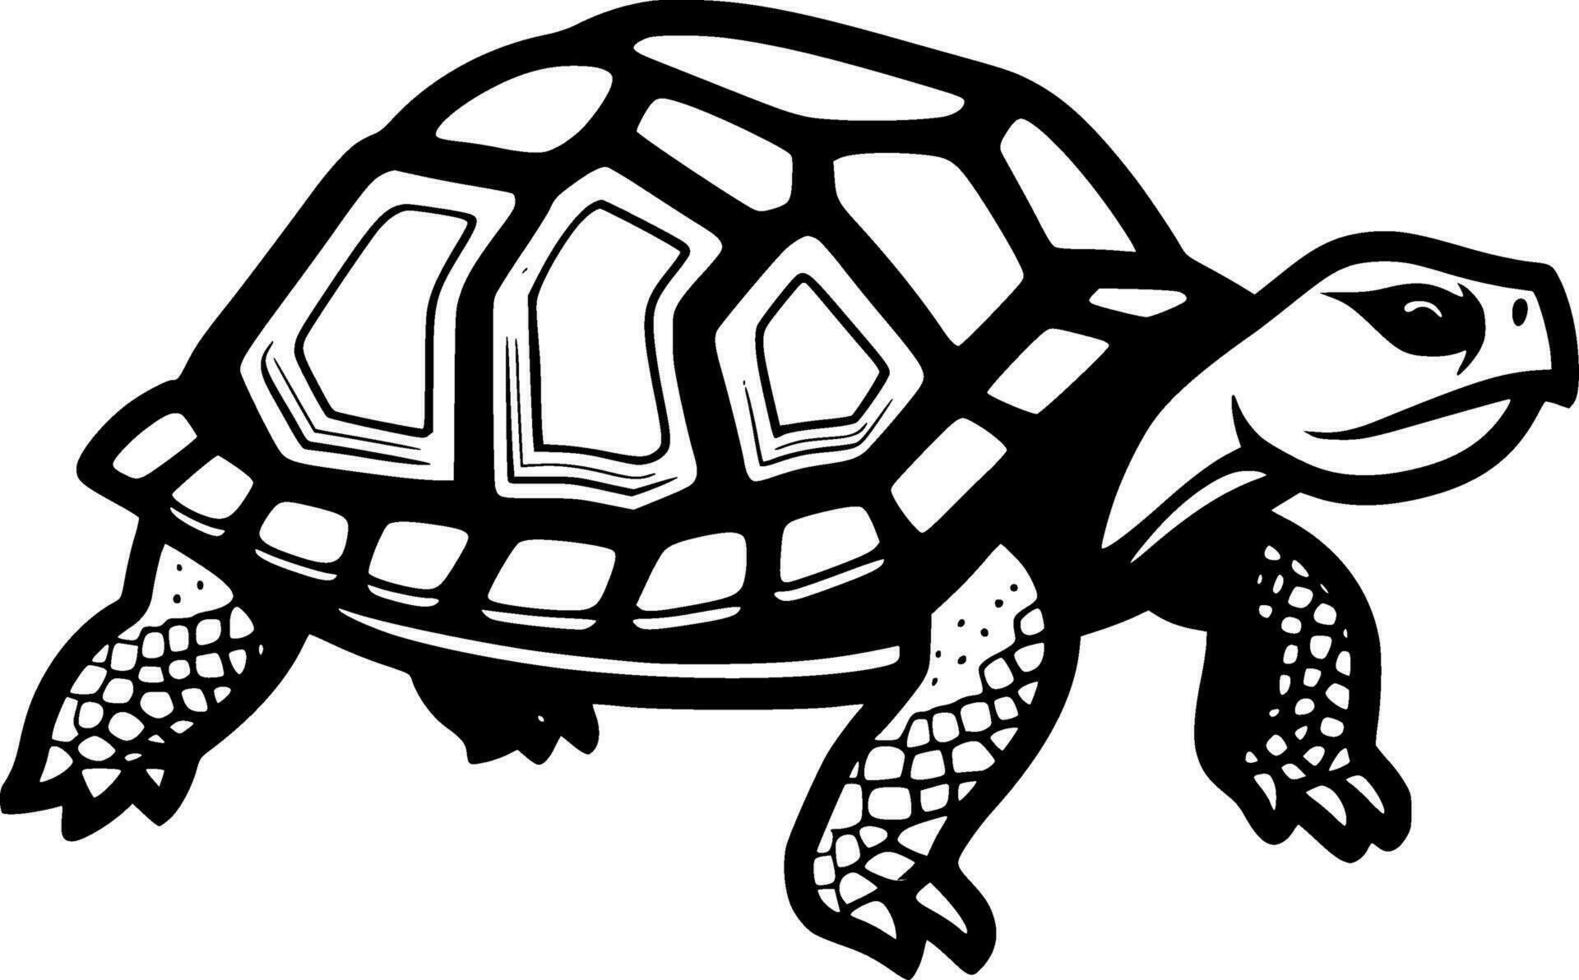 Tortuga - negro y blanco aislado icono - vector ilustración